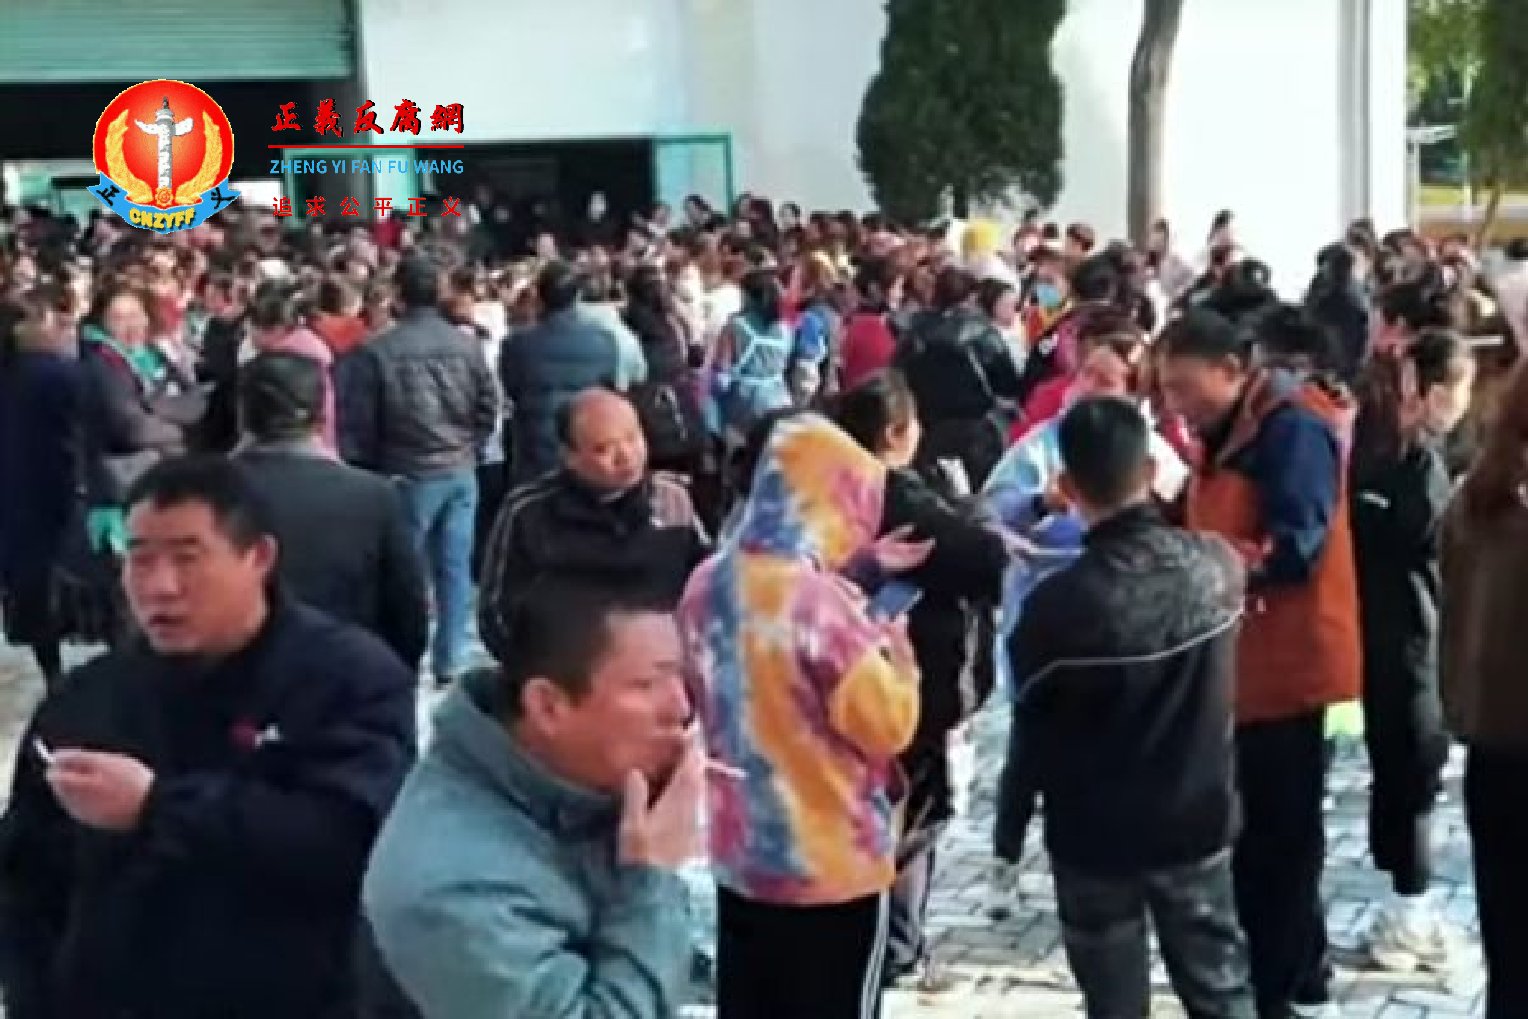 自11月30日起，江苏扬州宝亿制鞋有限公司上千名工人发起集体大罢工，要求厂方就突然宣布停产及解除合同做出合理赔偿。.png